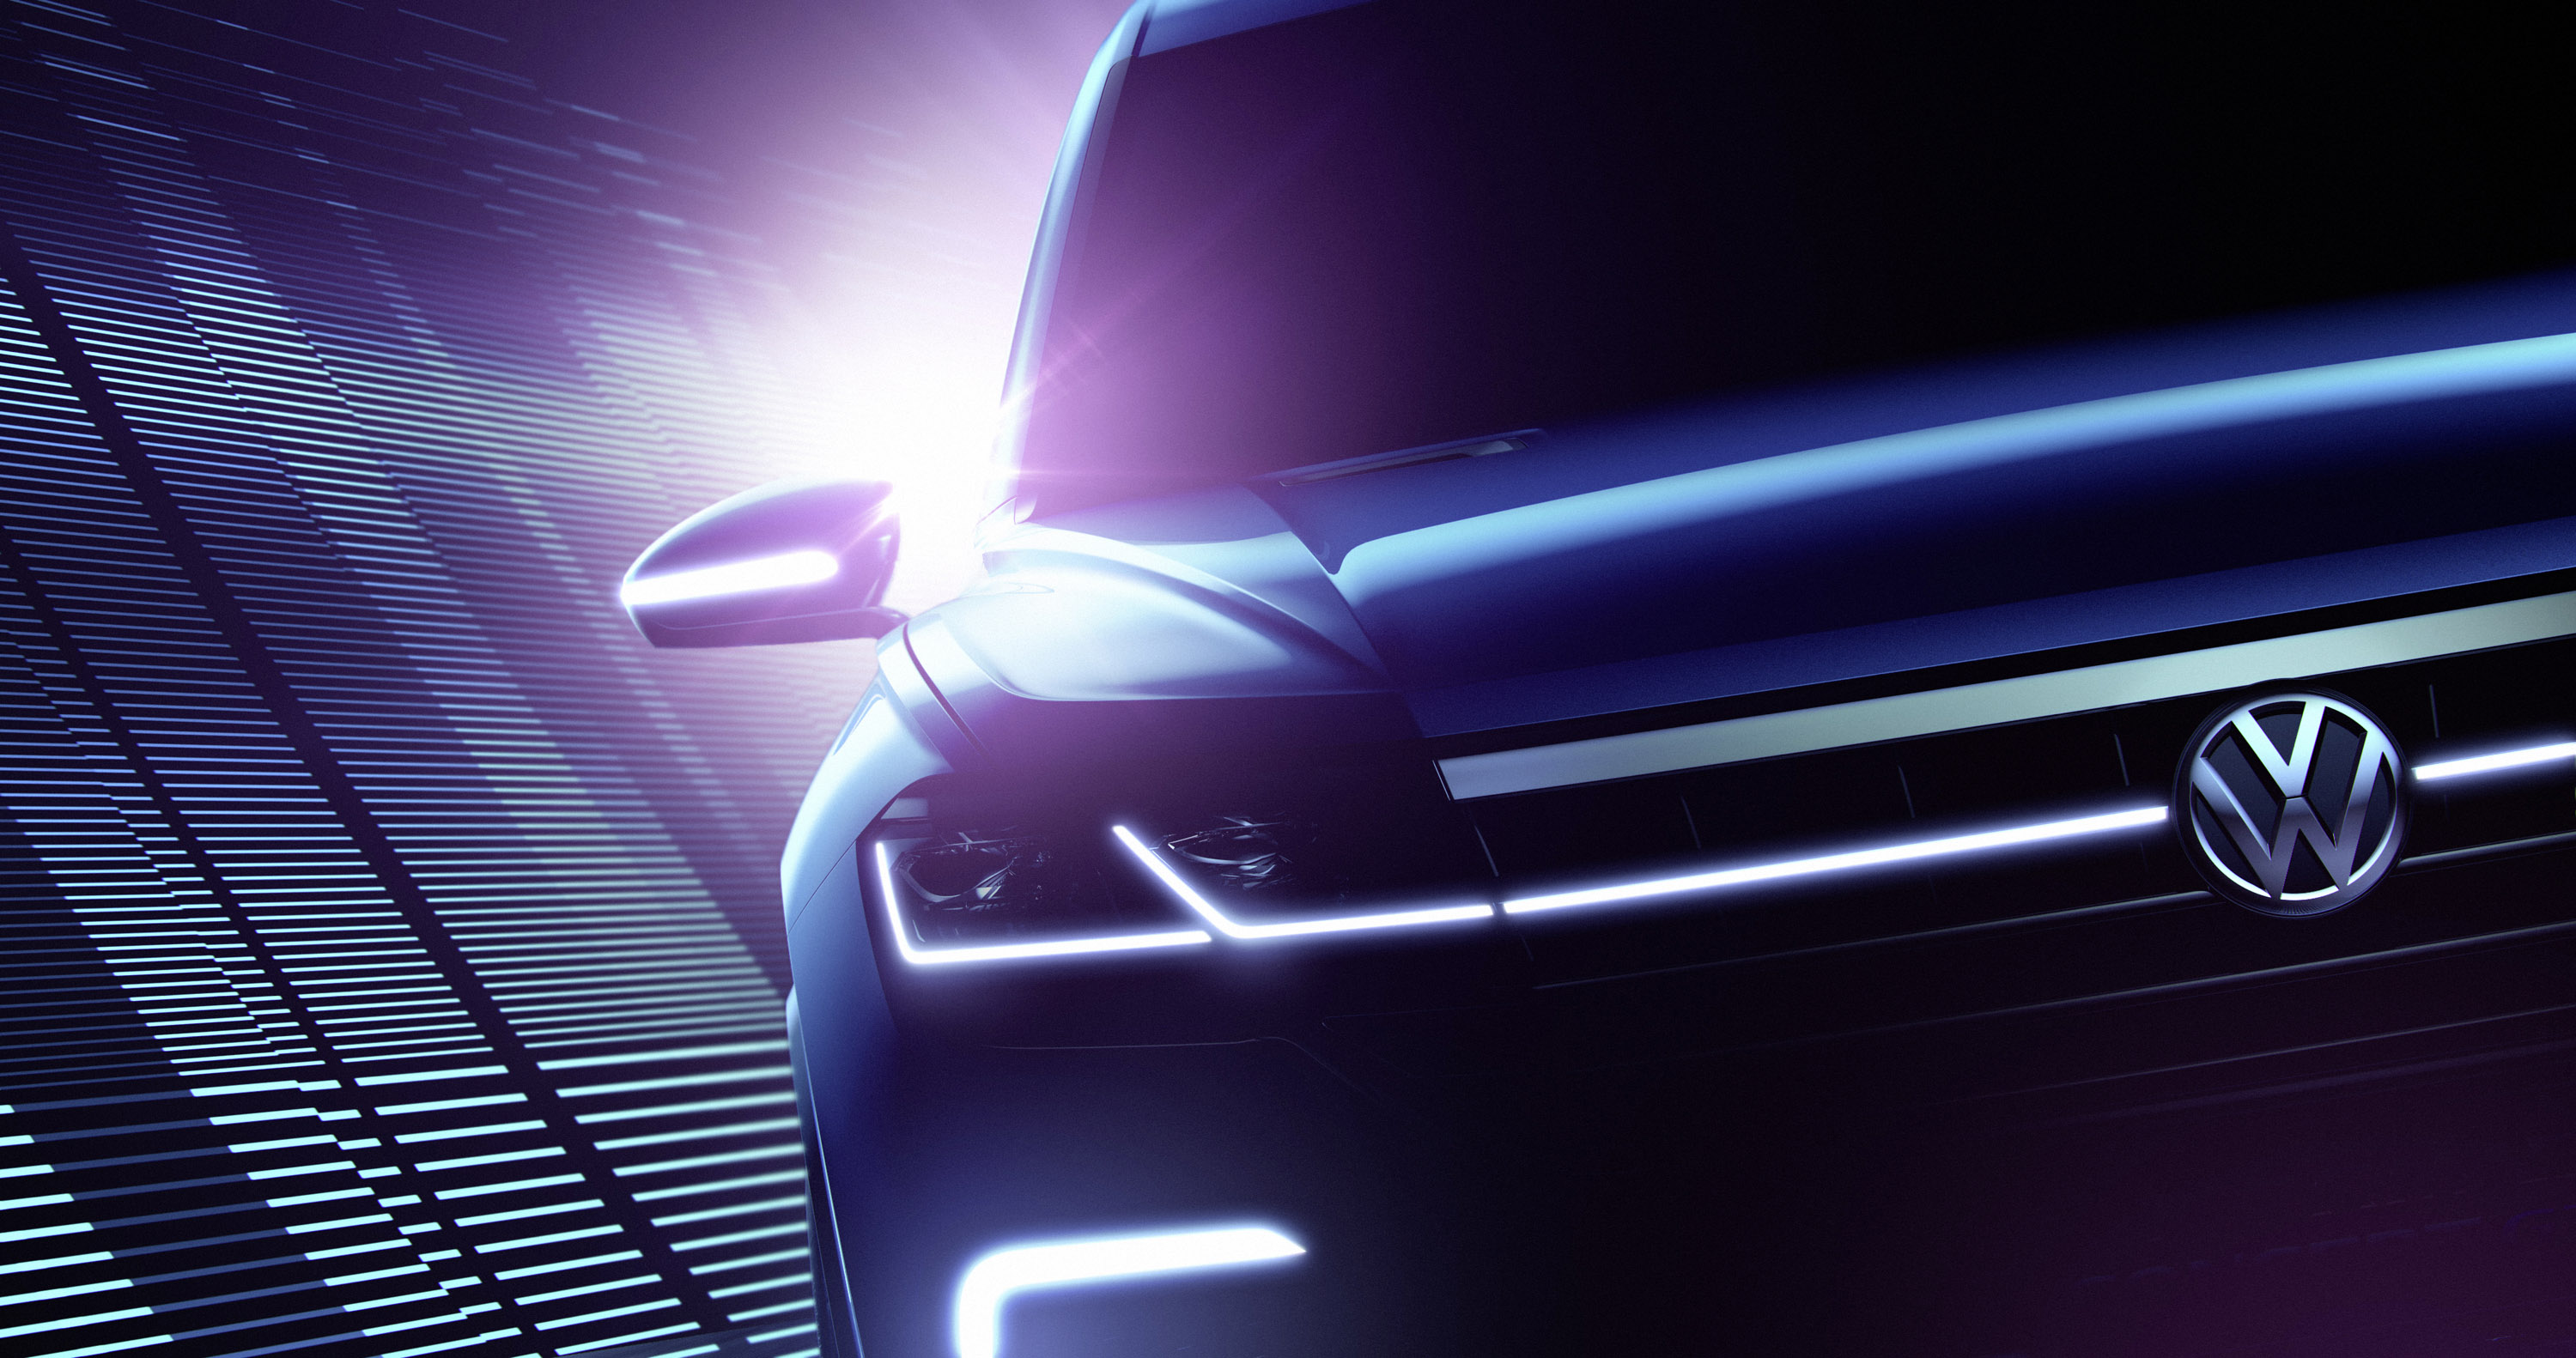 Volkswagen Beijing Concept SUV Teasers